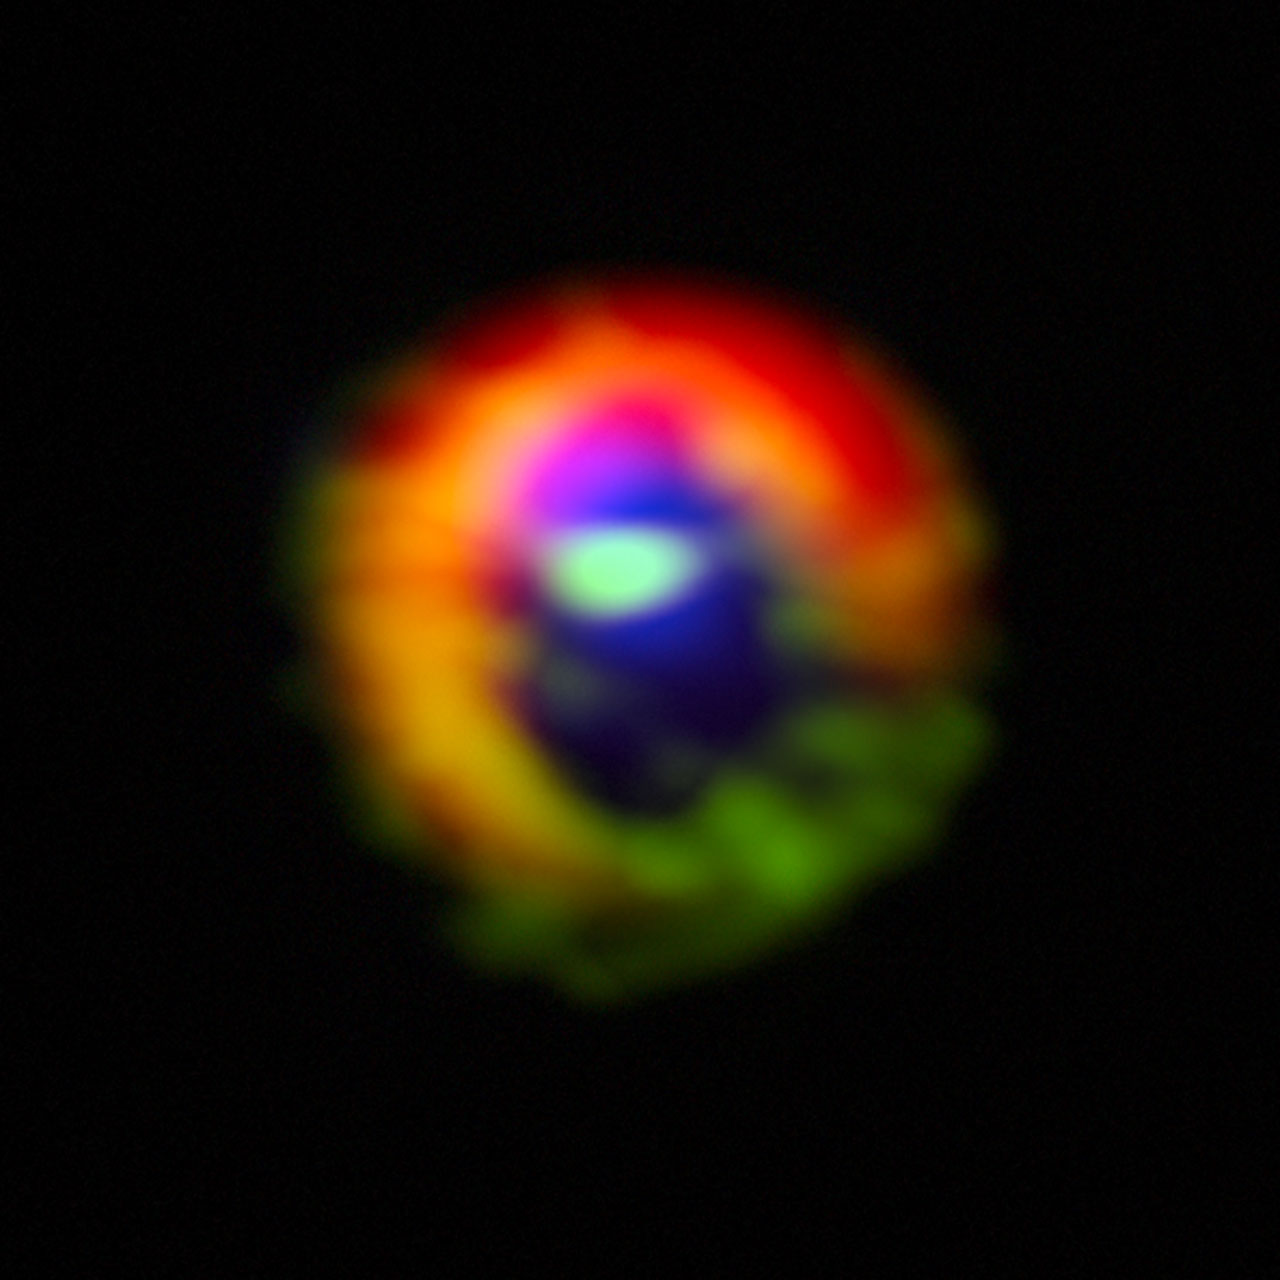 アルマ望遠鏡がとらえた、HD142527のまわりのガスと塵の円盤。